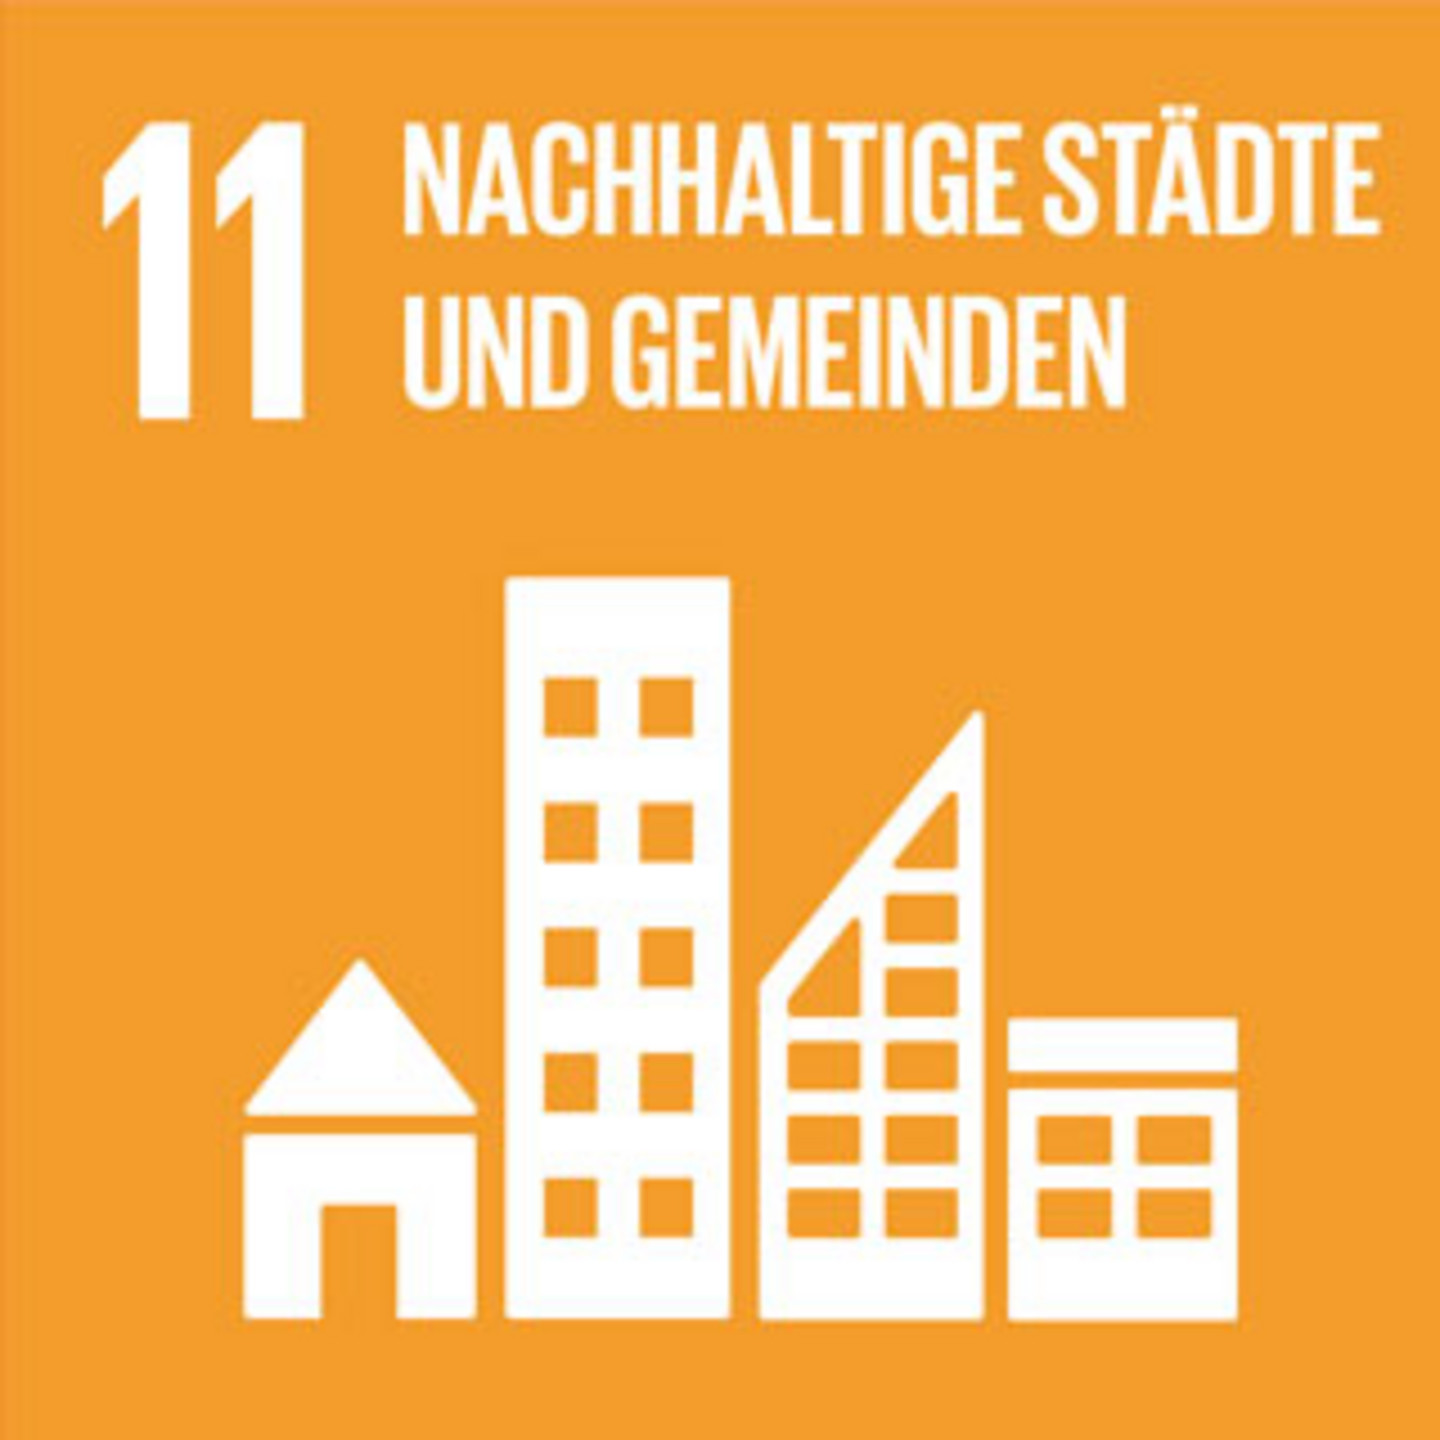 Ein orangfarbender Hintergrund mit der Schrift "Nachhaltige Städte und Gemeinden".